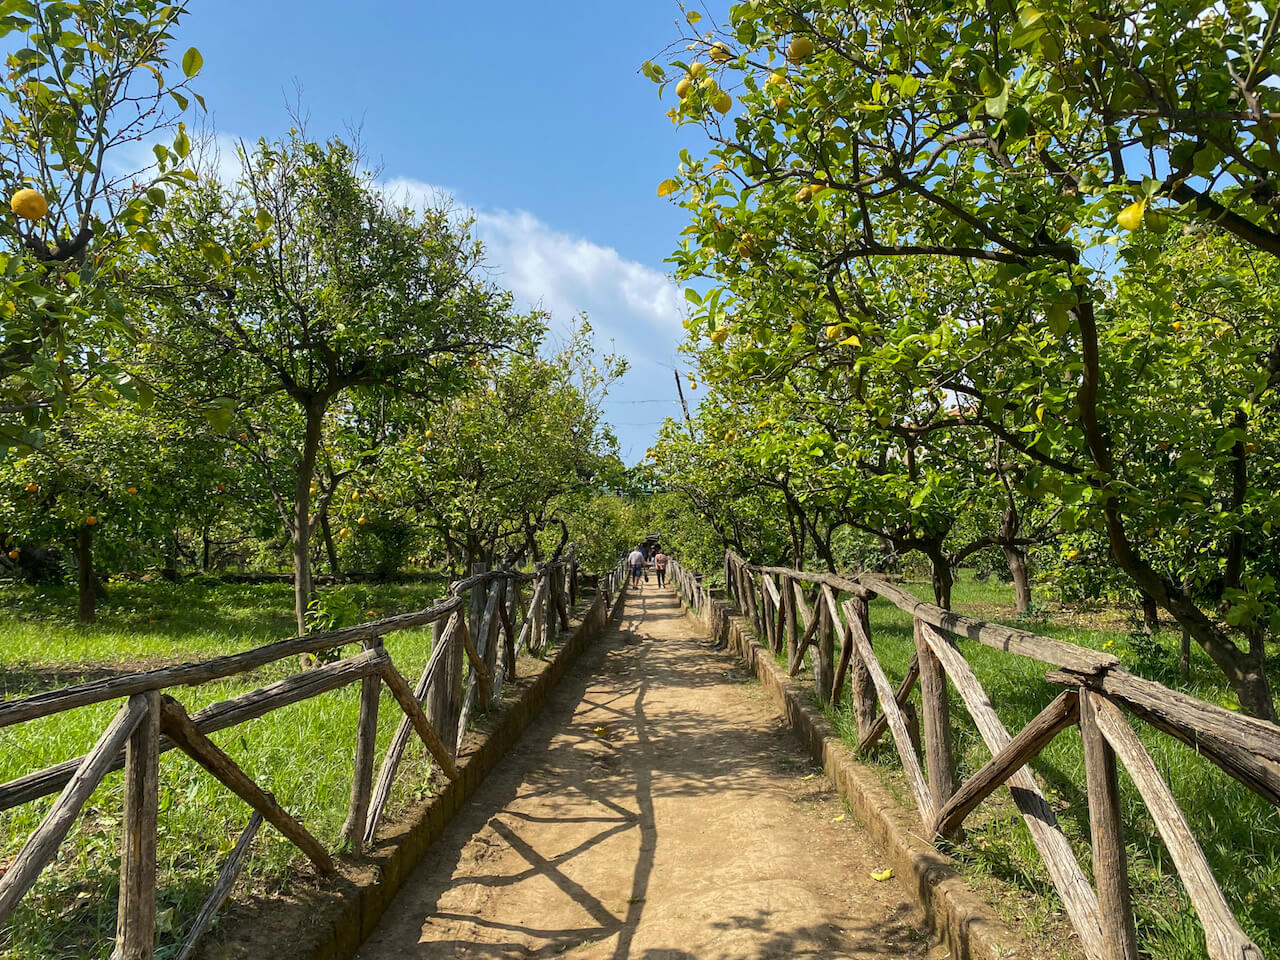 Public lemon grove in Sorrento